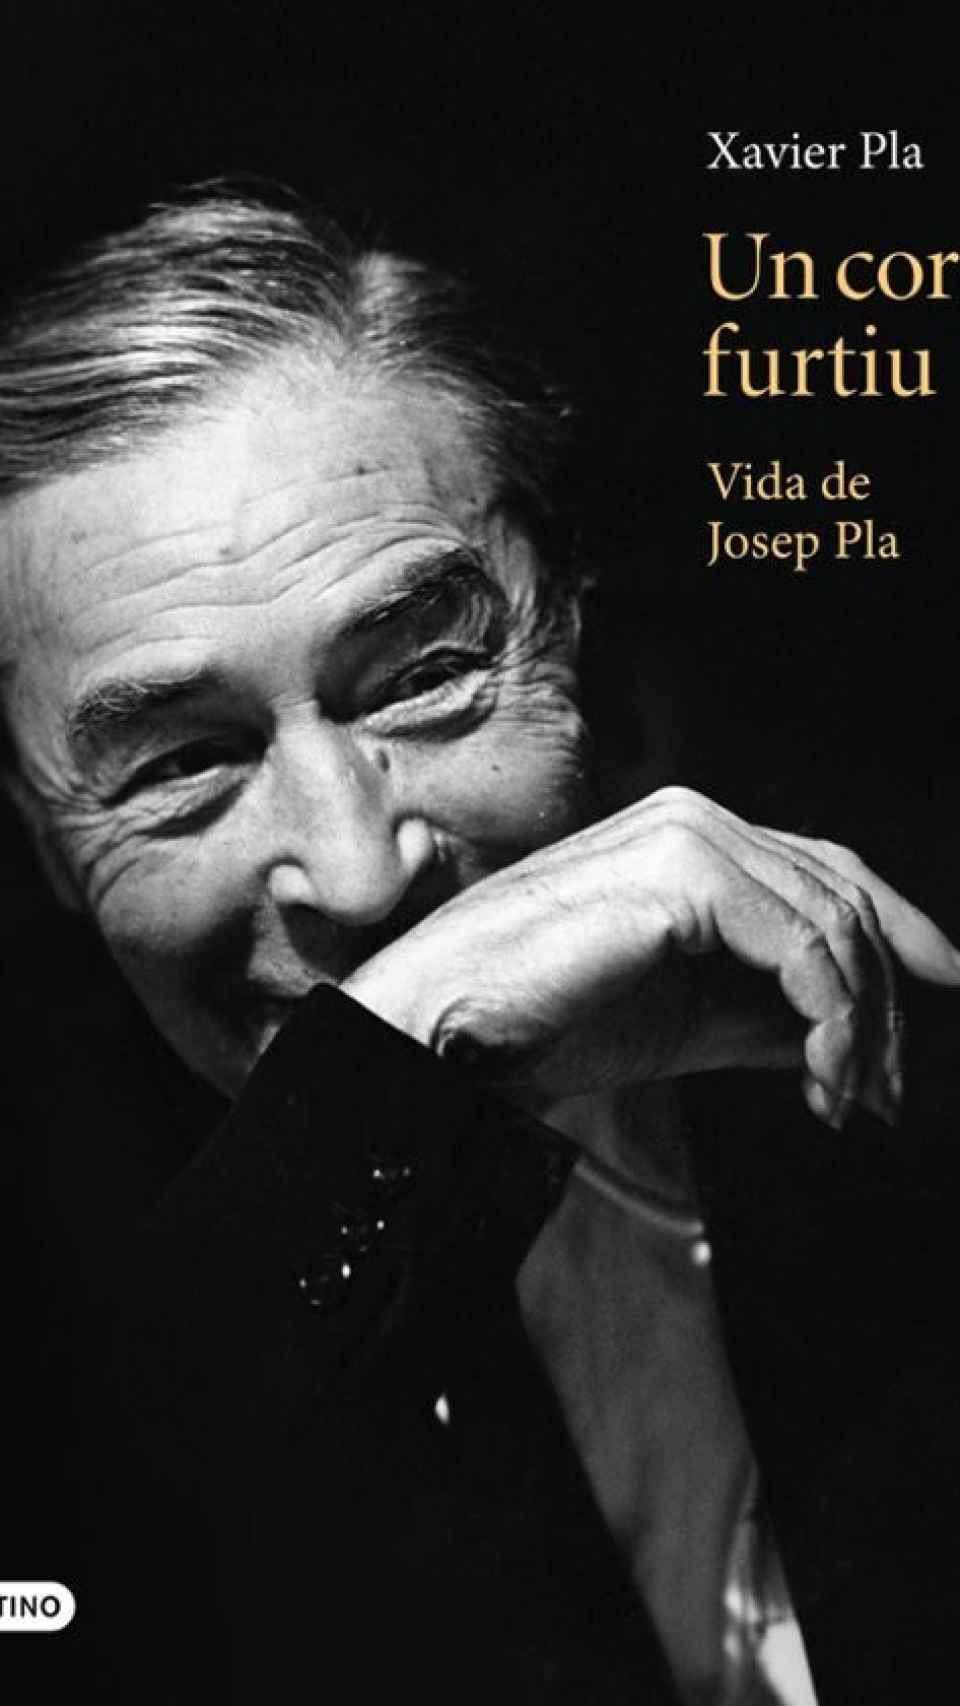 Portada de Xavier Pla sobre la biografía de Josep Pla